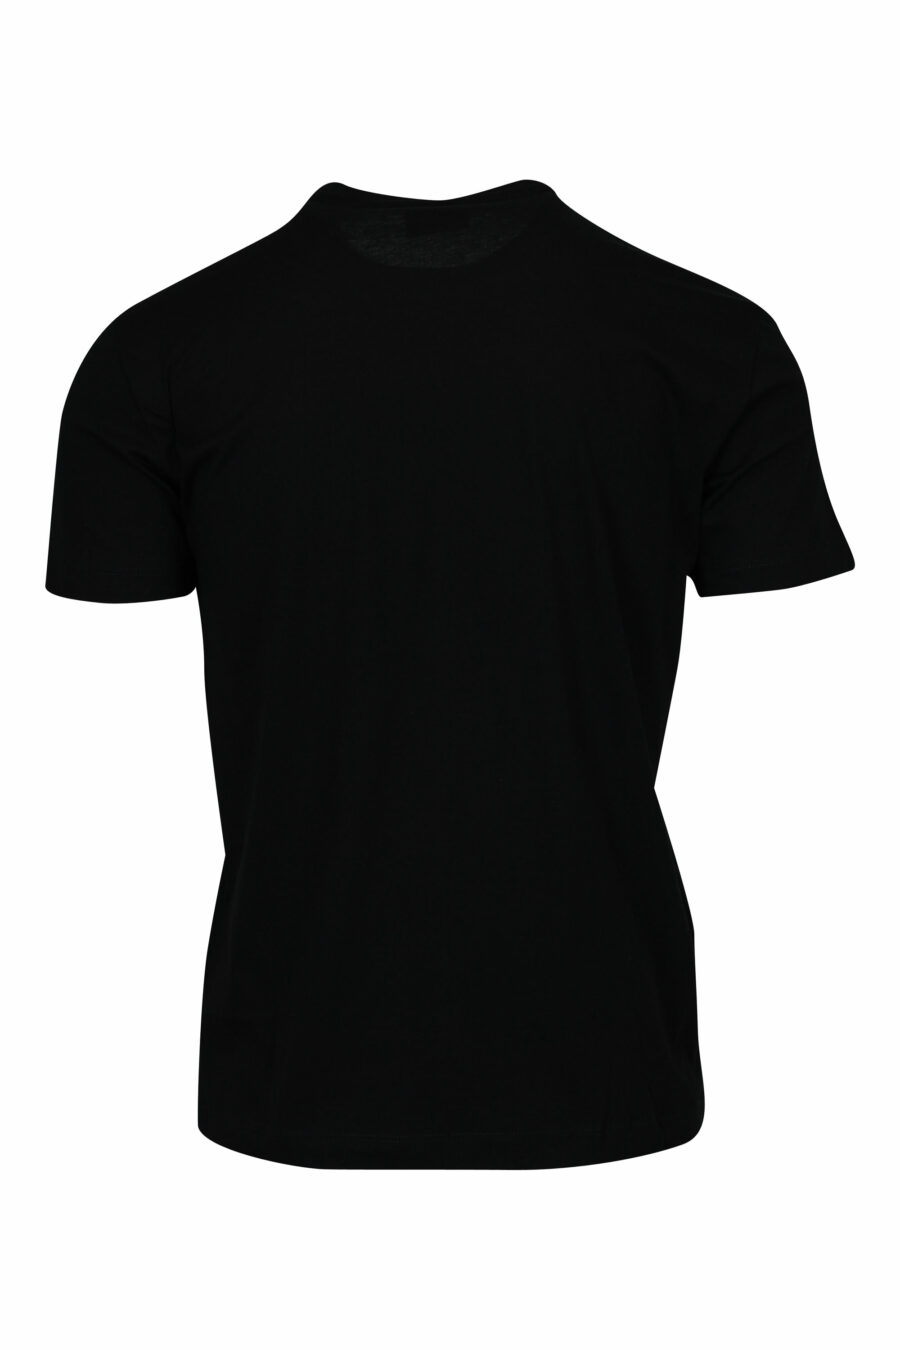 T-shirt noir avec minilogue "lux identity" noir sur plaque d'or - 8058947471980 1